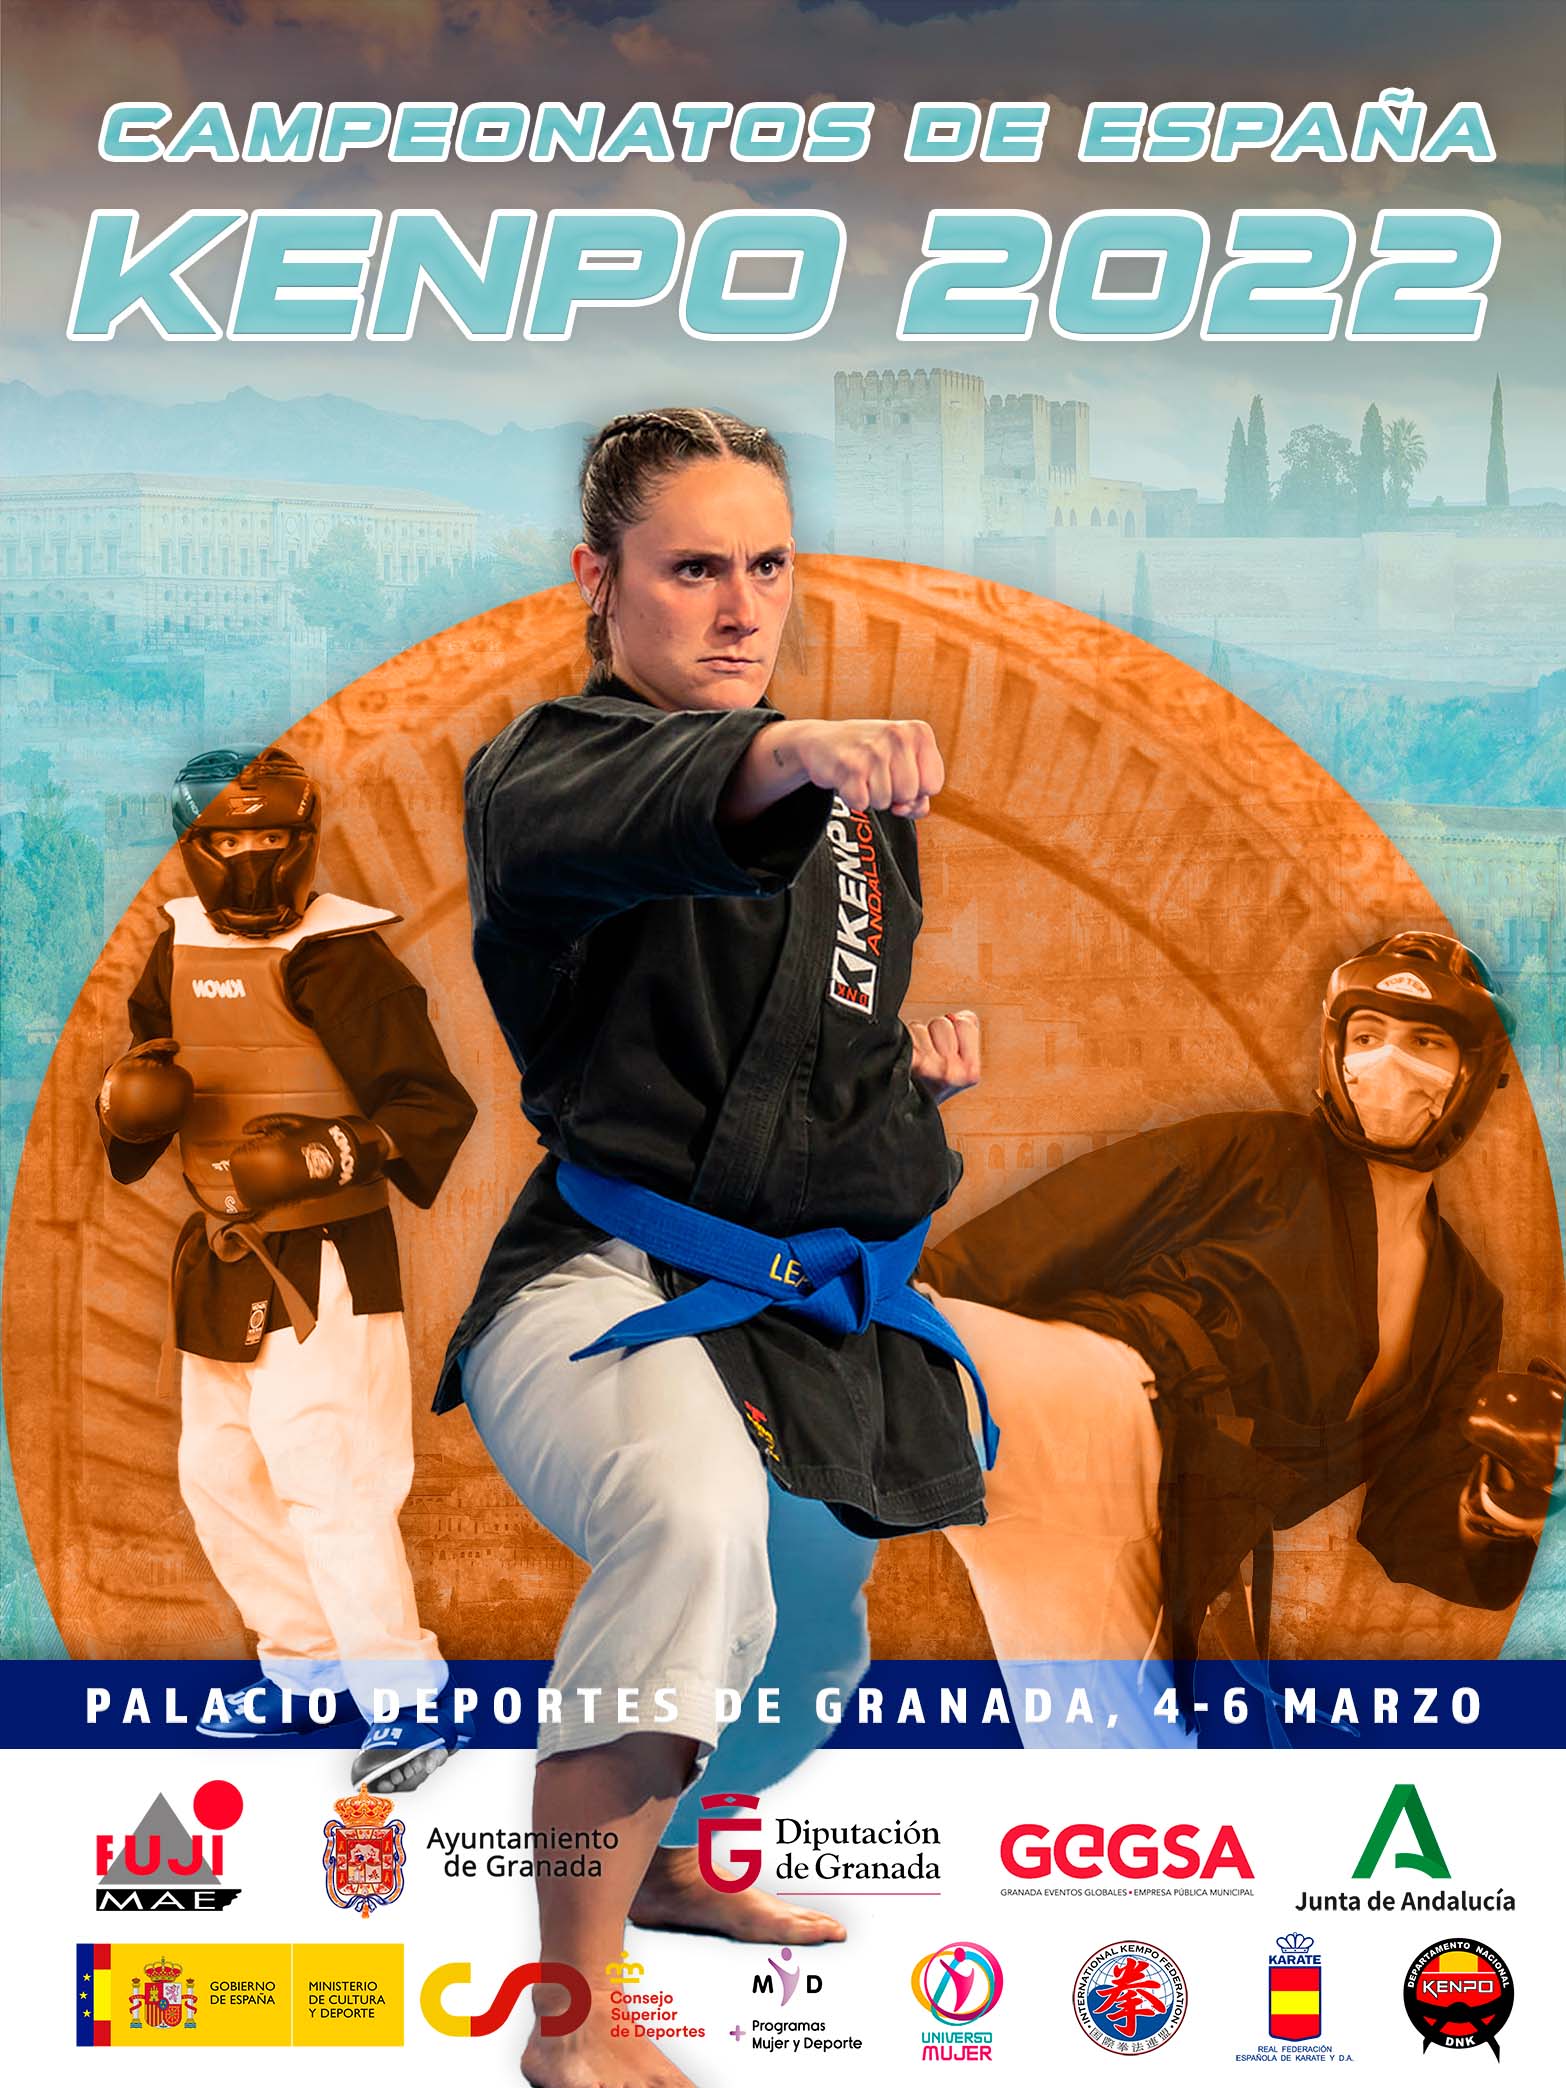 Campeonato de España de Kenpo 2022